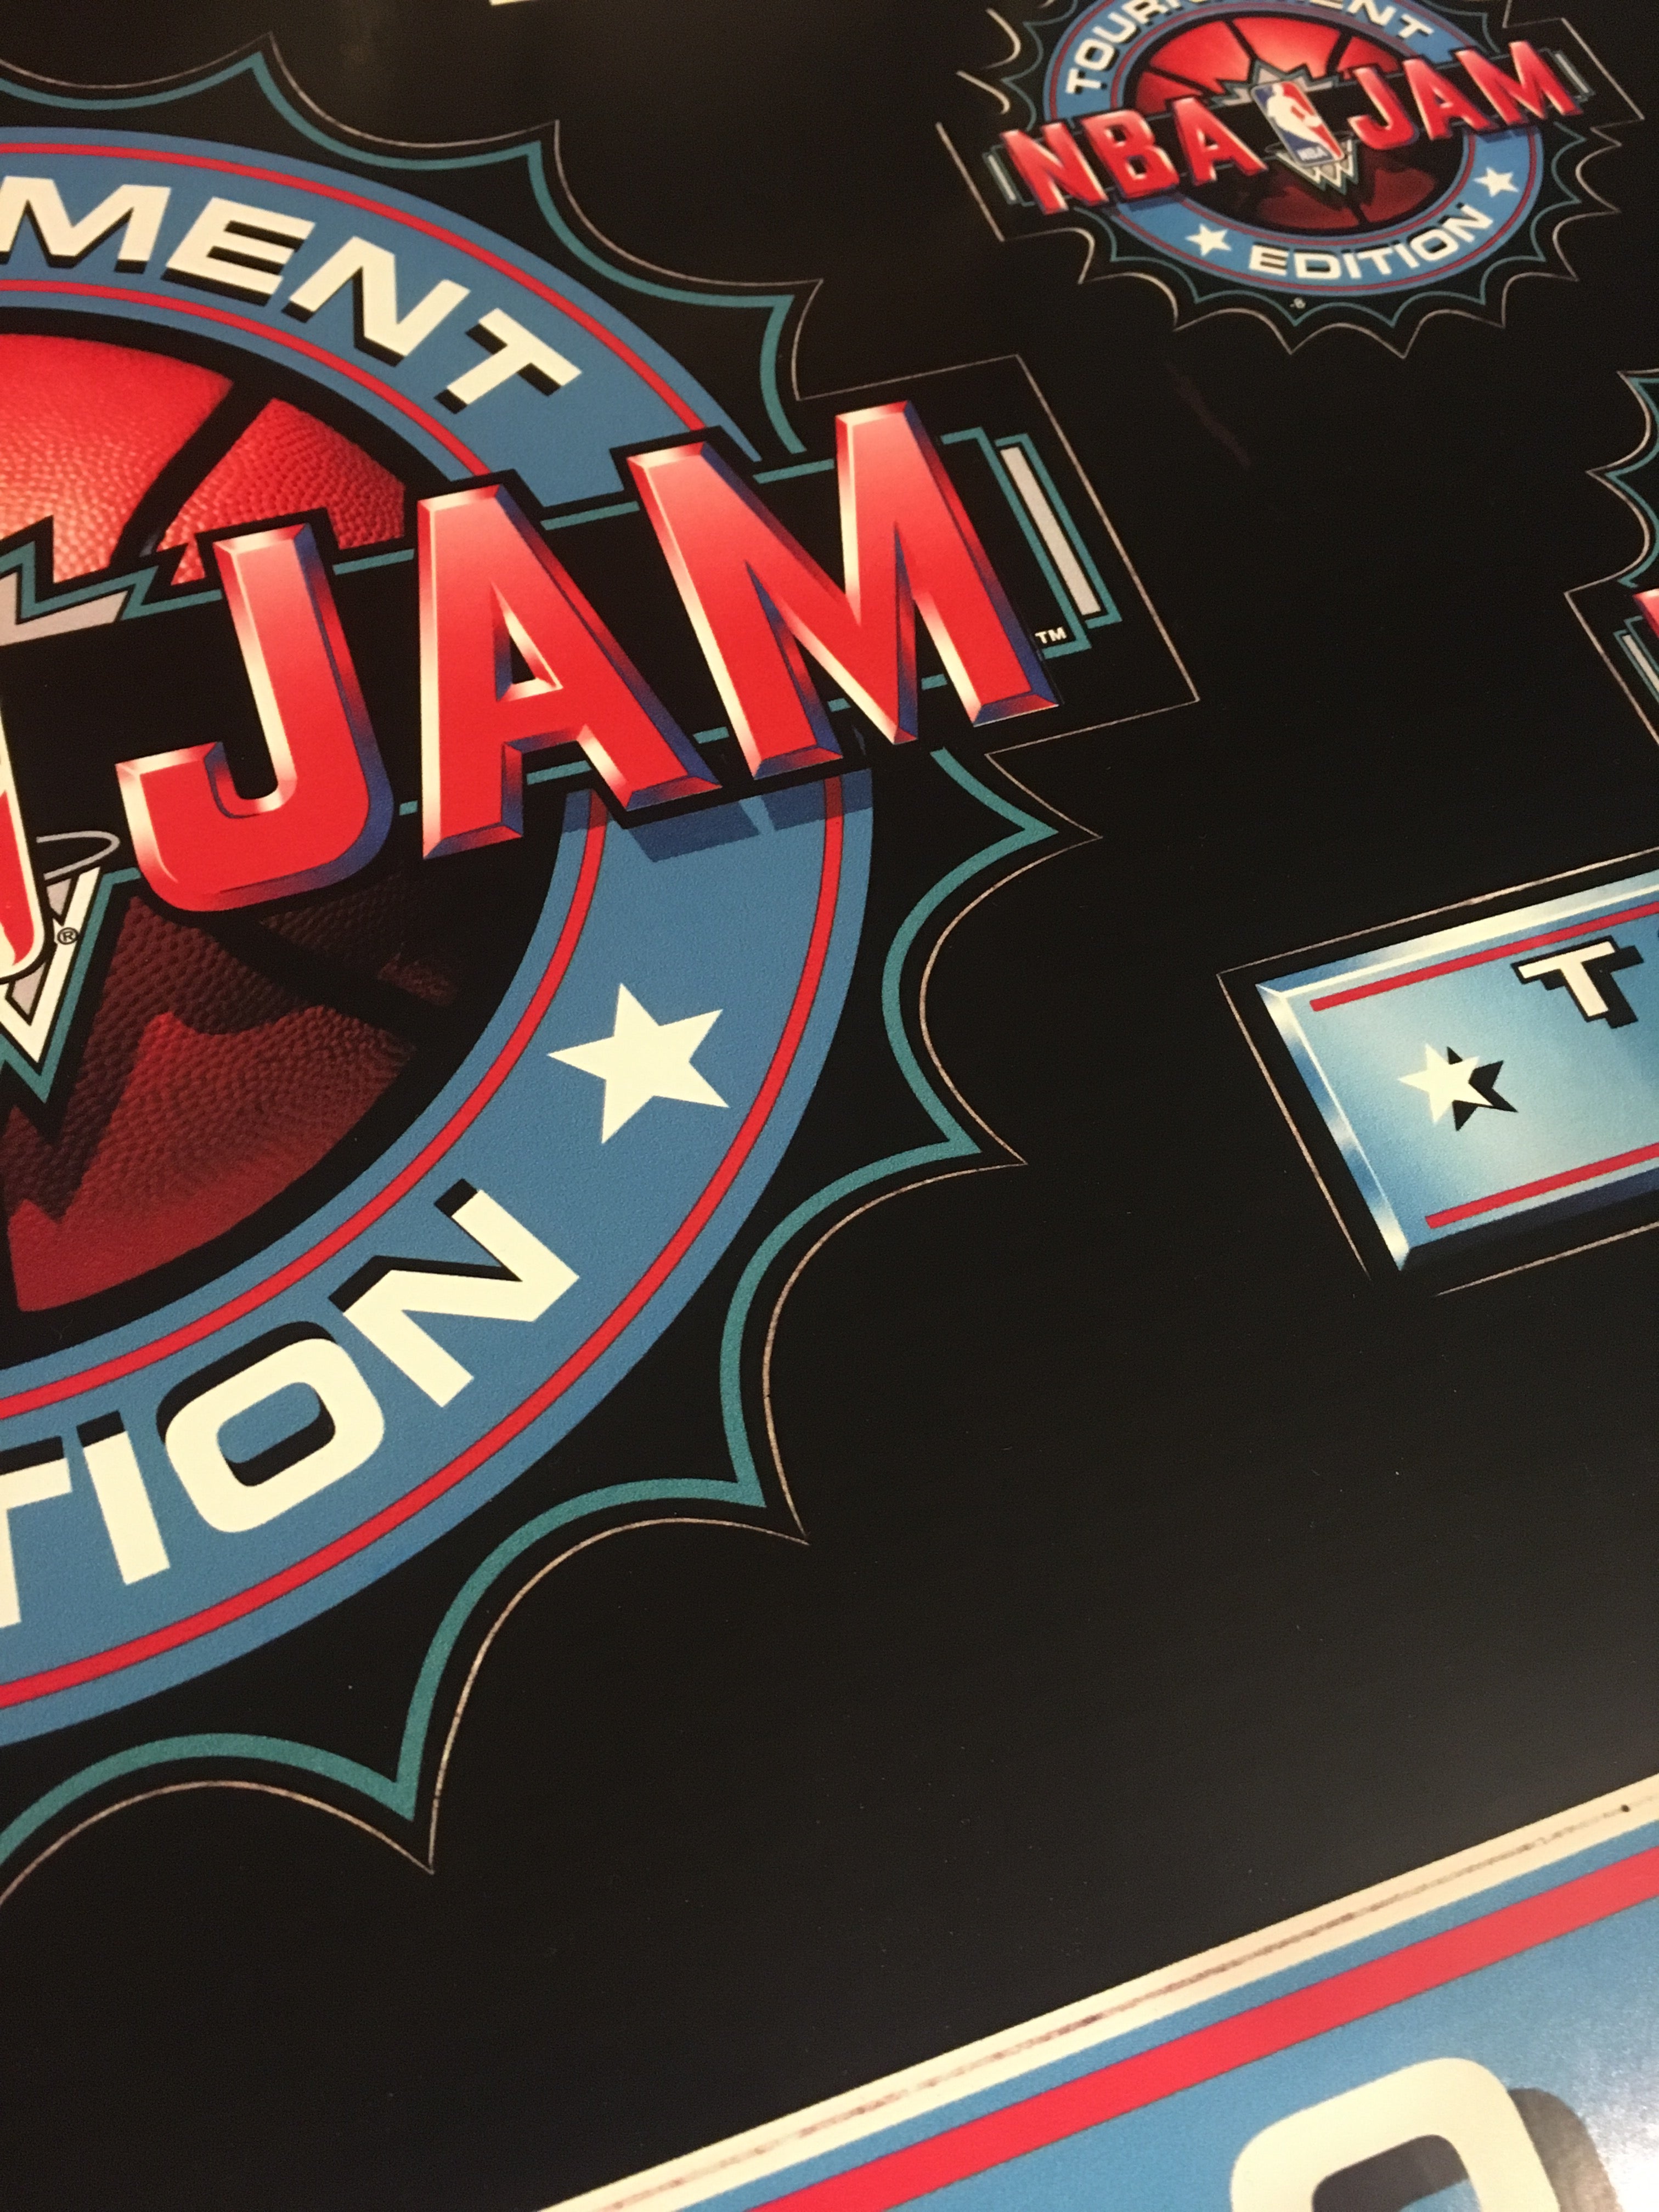 Arte del kit de conversión de NBA Jam Tournament Edition